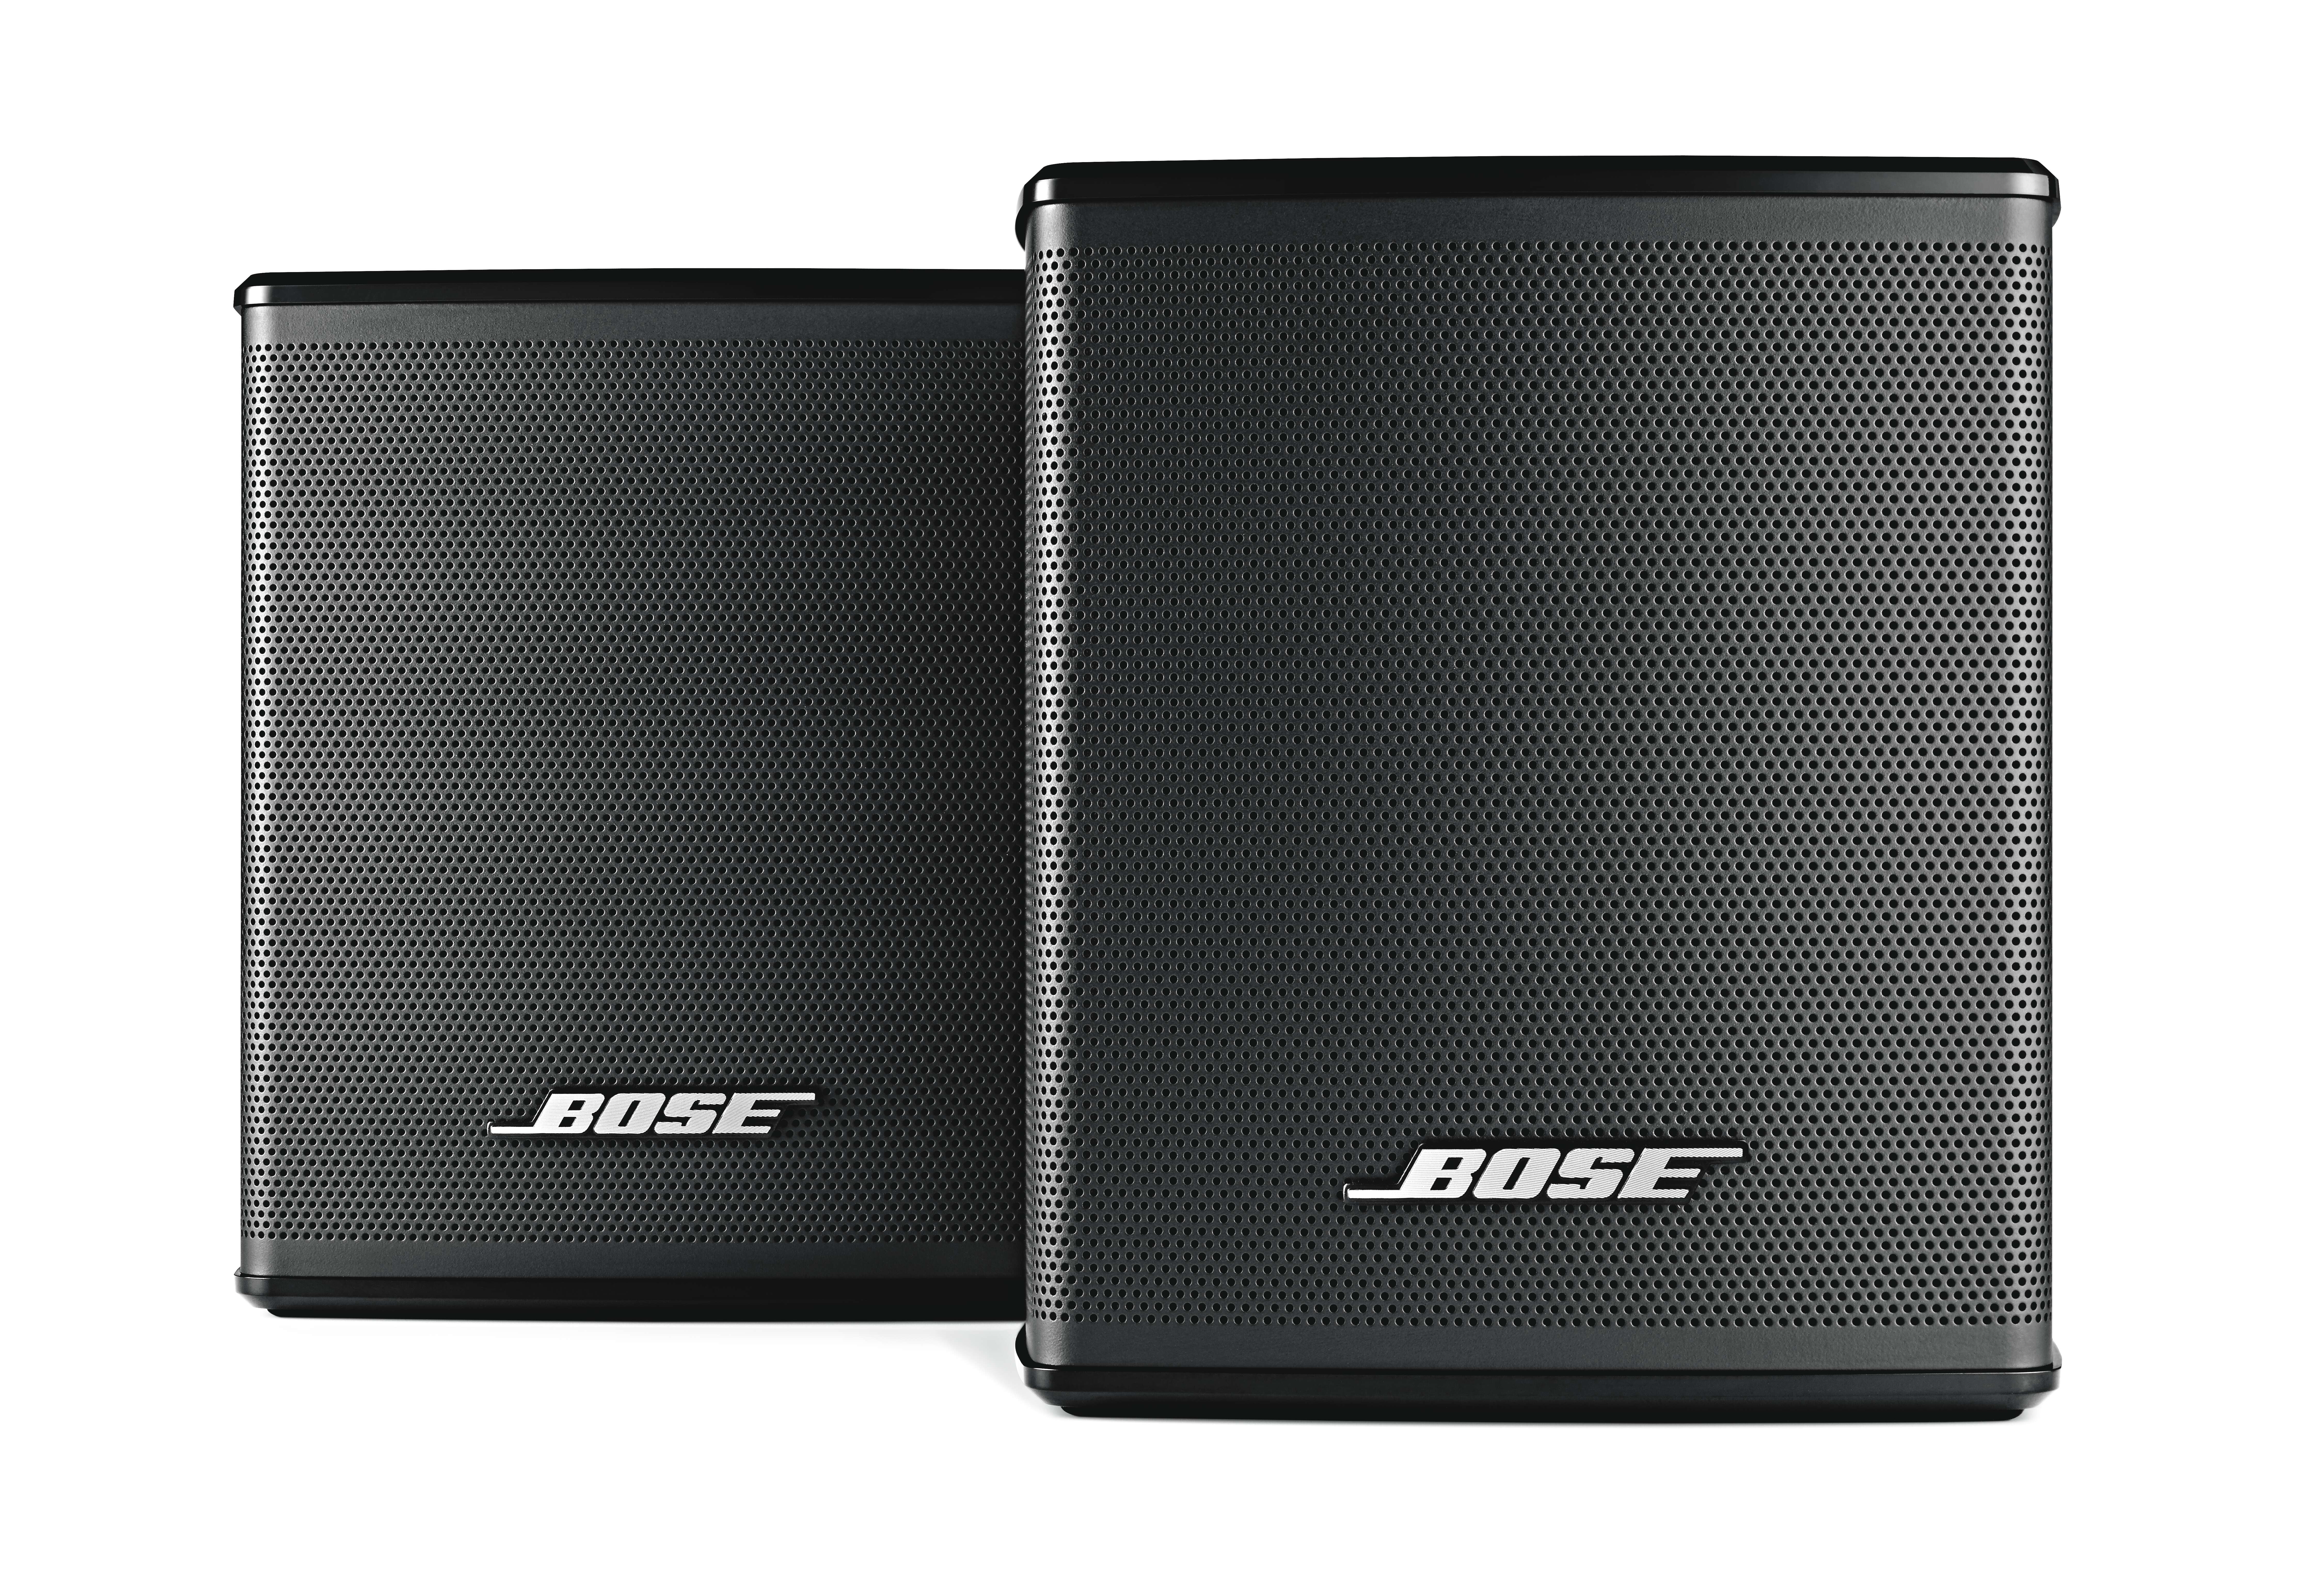 Expertise software Indringing Bose Surround Sound Rear Speakers for Bose Soundbars, Black - Walmart.com